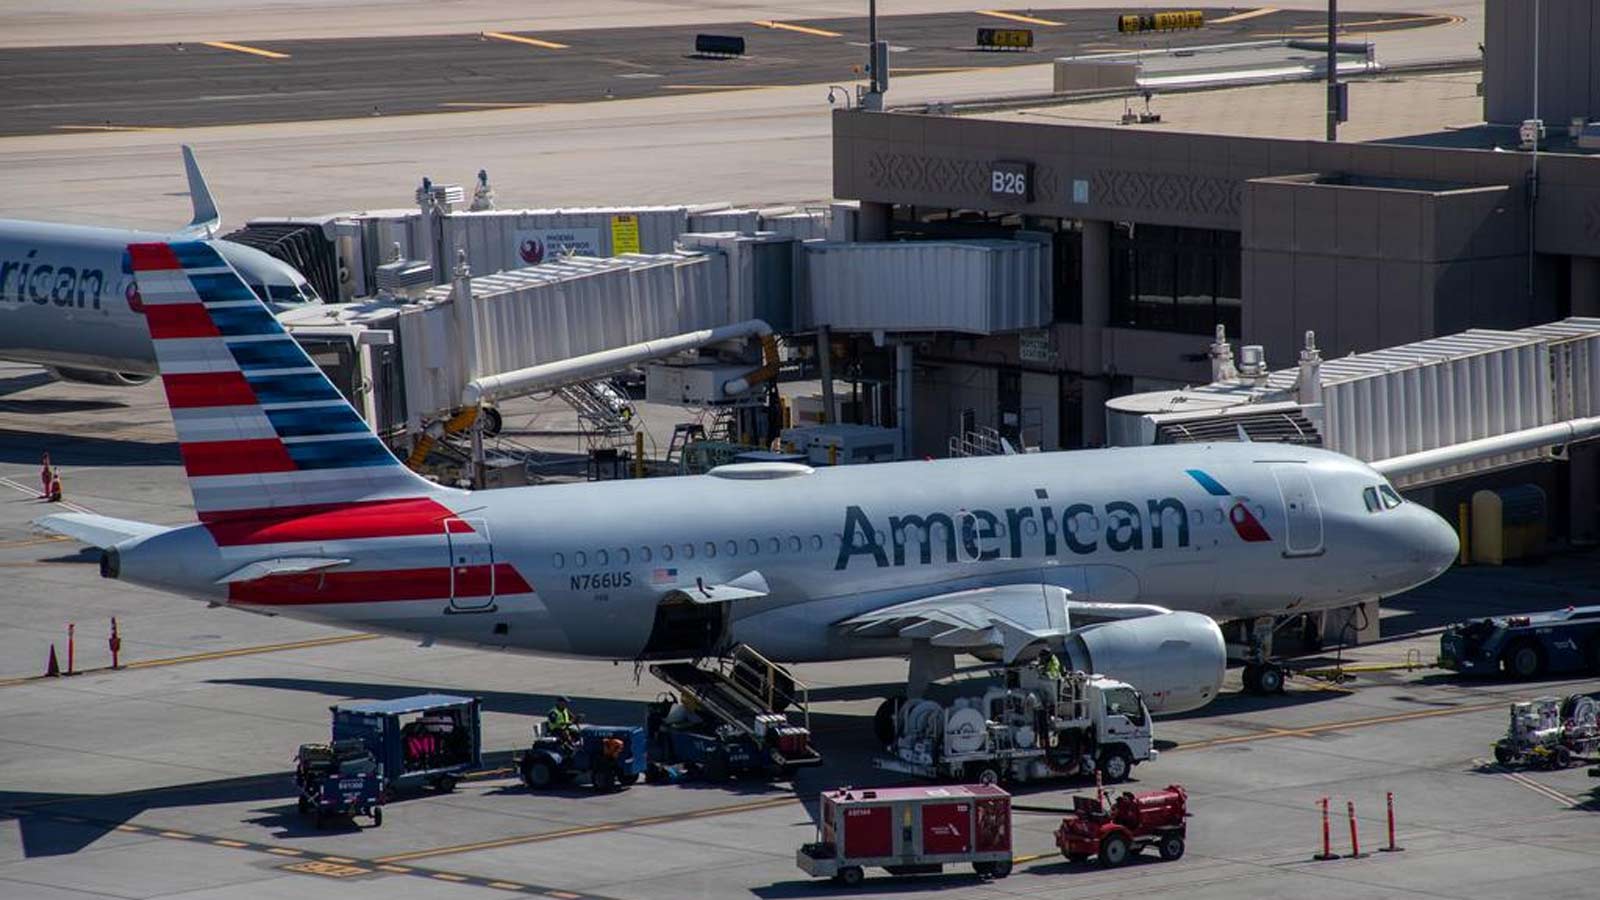 Phoenix Sky Harbor Airport passenger numbers break another record